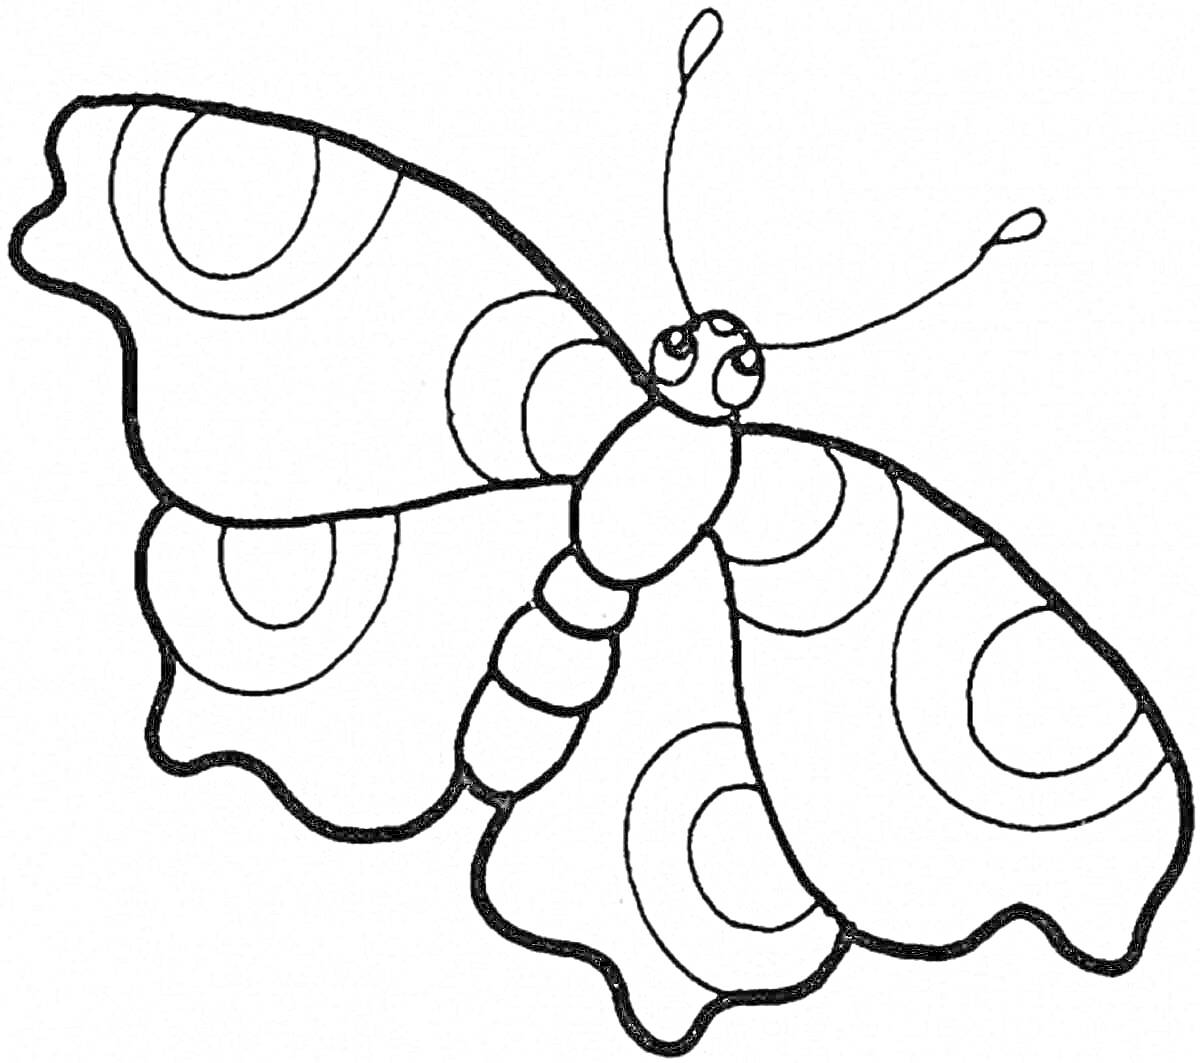 Раскраска Бабочка с кругами на крыльях